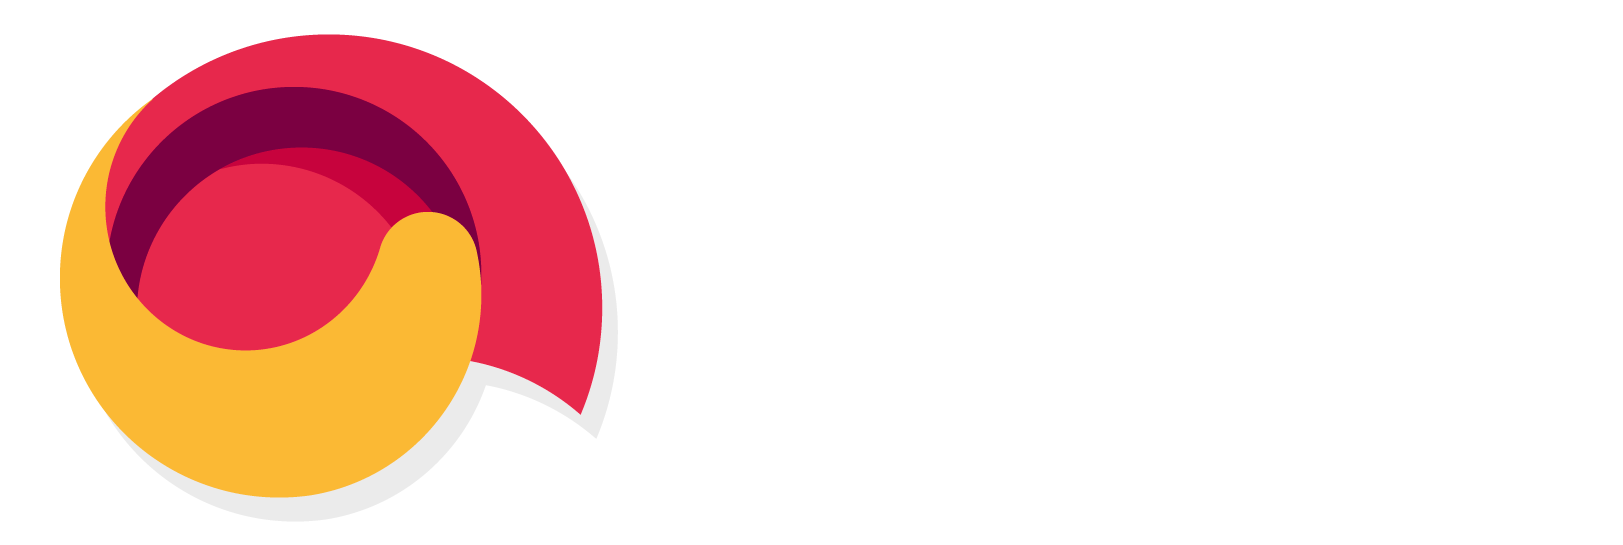 Cora Laboratório